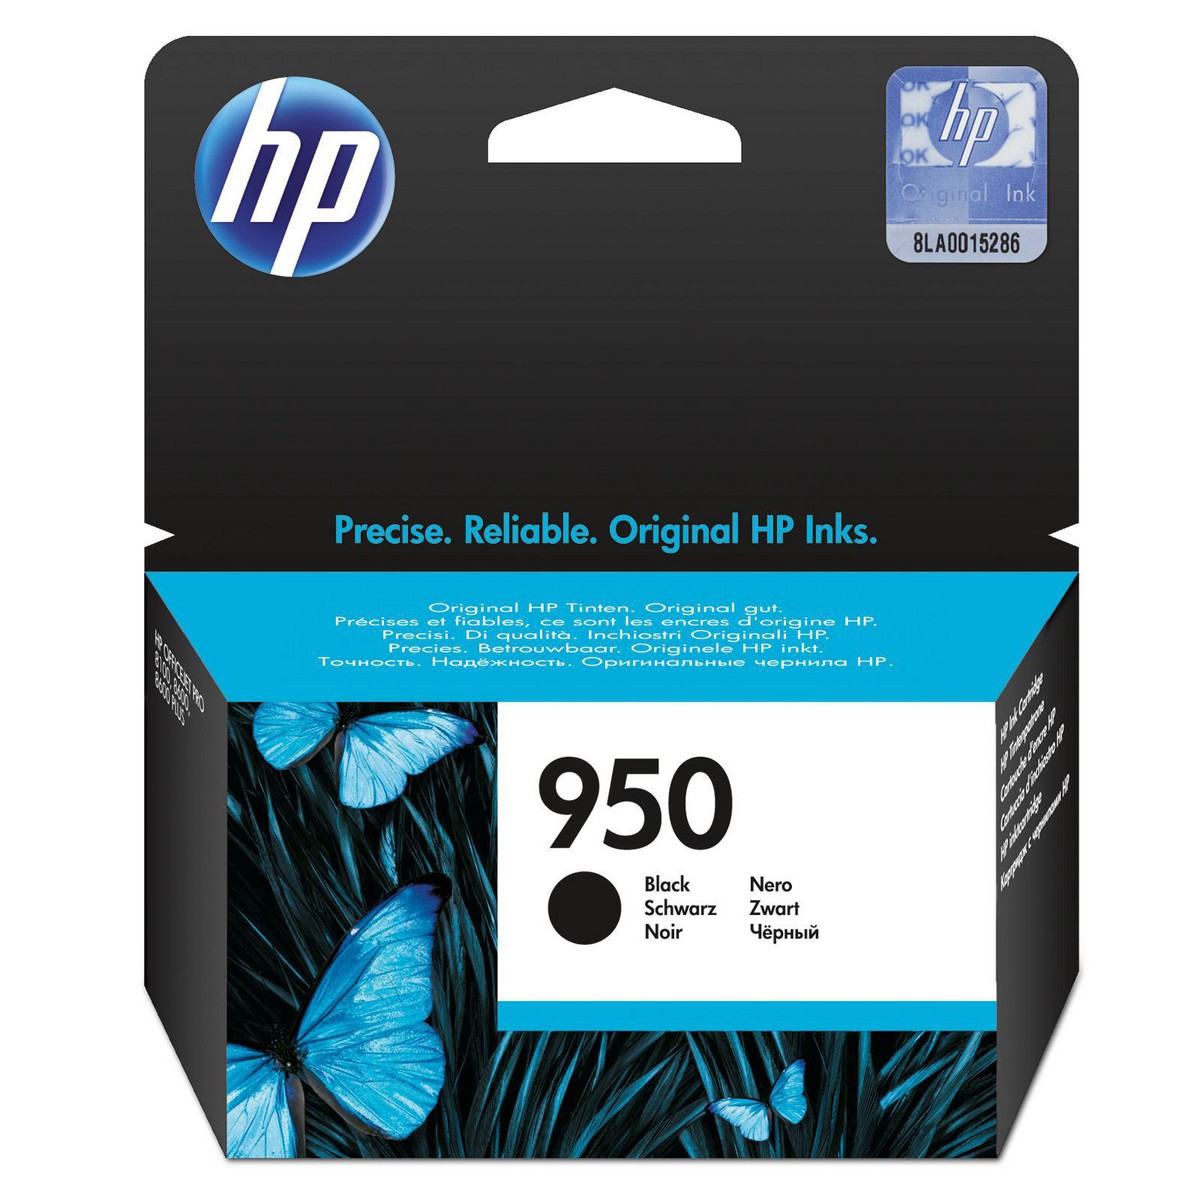 Картридж HP CN049AE №950 оригинальный чёрный для принтеров OfficeJet Pro 8615 | OfficeJet Pro 8600 E-AIO | OfficeJet Pro 251dw | OfficeJet Pro 276dw | OfficeJet Pro 8620 | OfficeJet Pro 8610 | OfficeJet Pro 8600 Plus e-AIO | OfficeJet Pro 8100 e-Printer